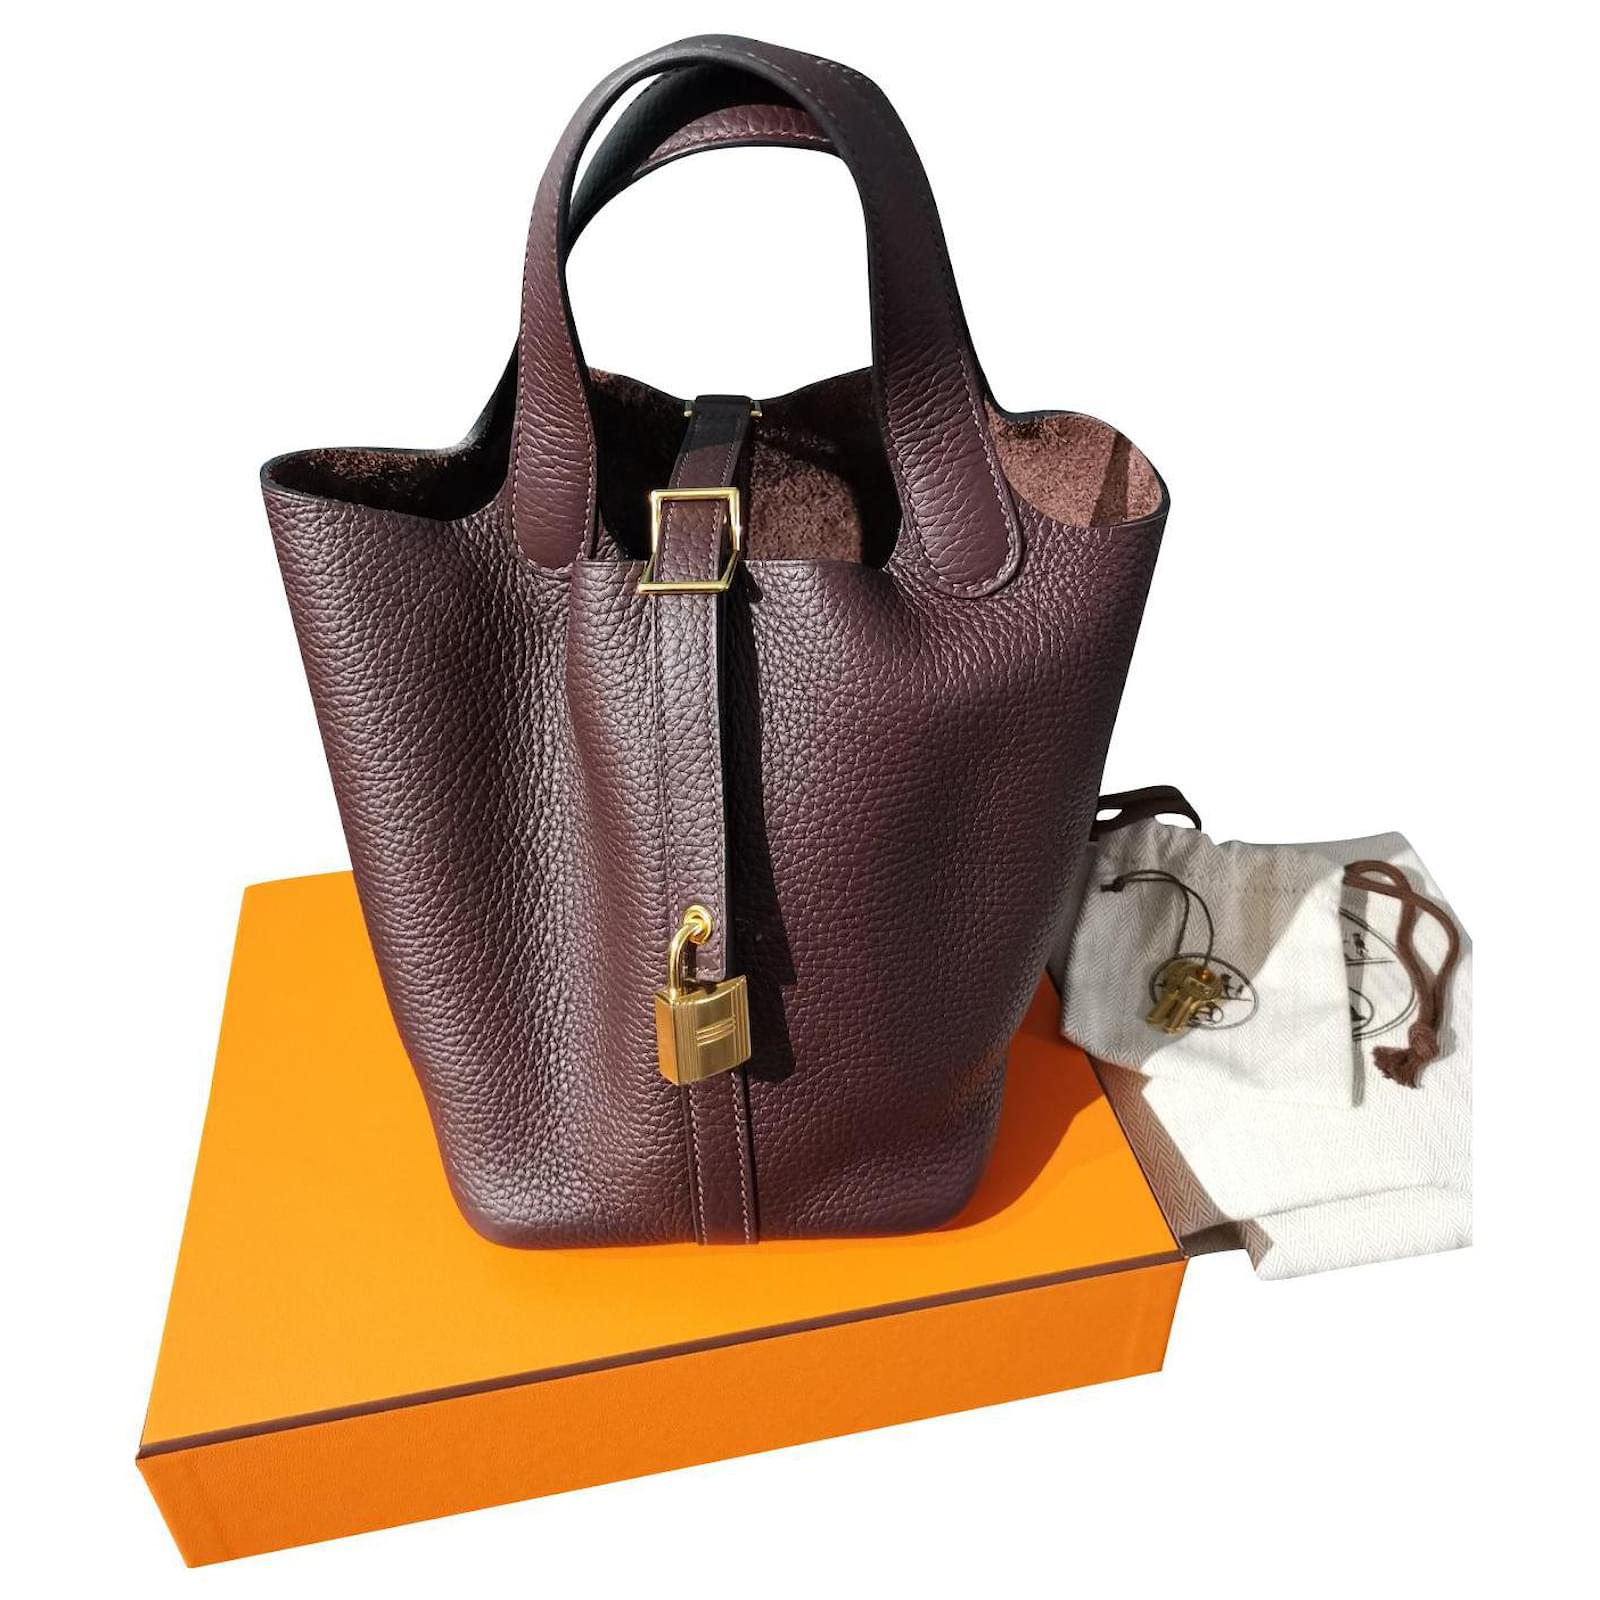 Handbags Hermès Hermès Picotin 18 in Rouge Sellier GHW